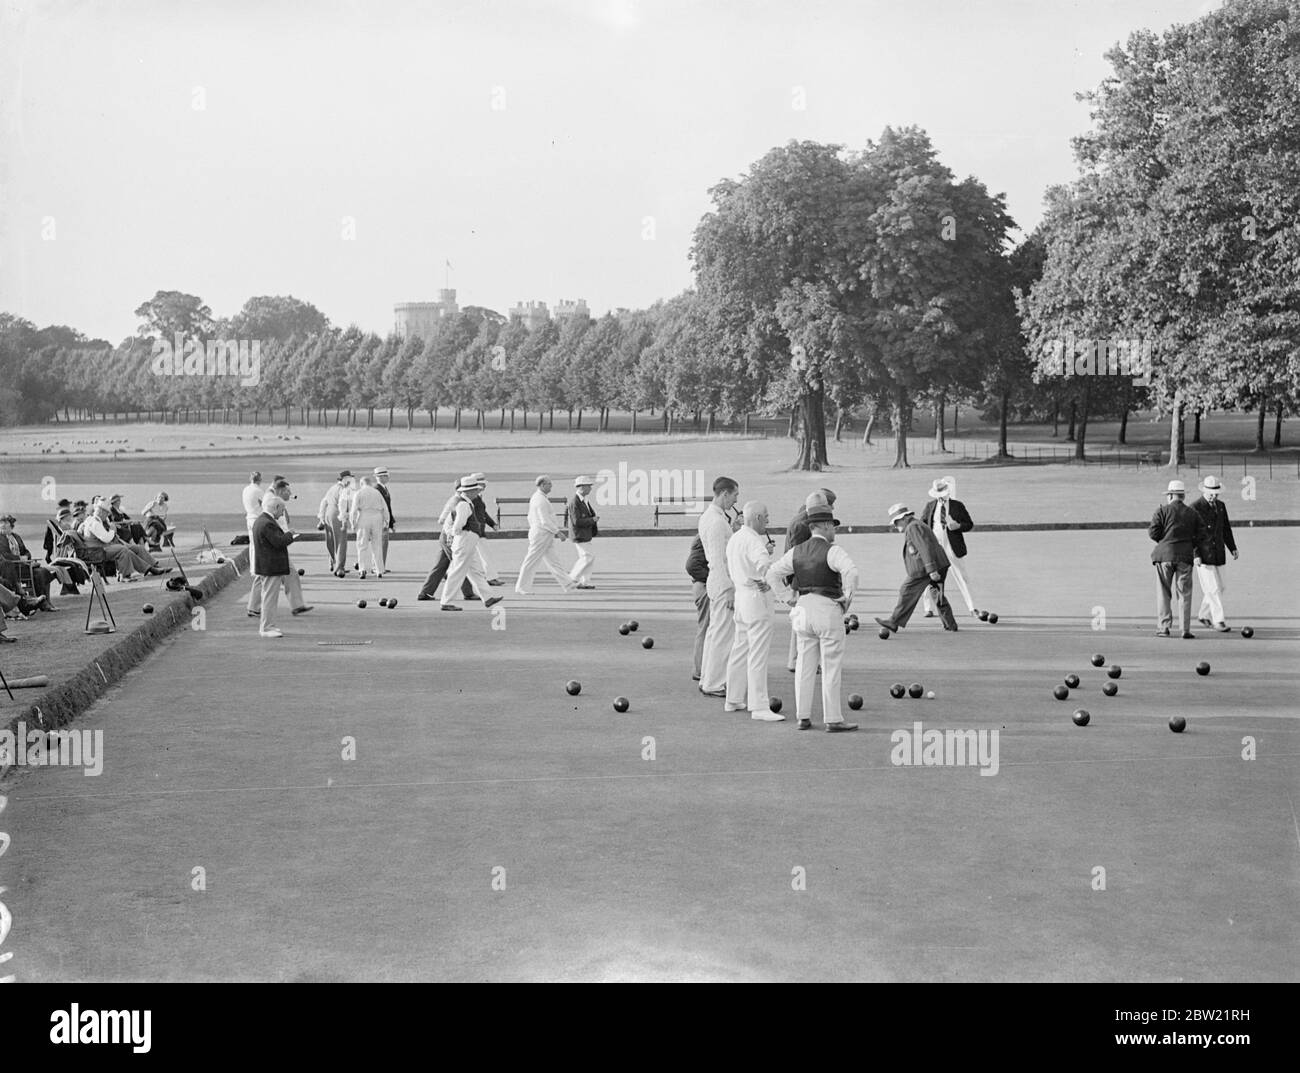 Die Spieler des Royal Household Bowling Club von Windsor Castle, deren Mitgliedschaft auf die Personen im Royal Service beschränkt ist. Sie spielten ein Spiel gegen eine australische Mannschaft auf dem Gelände von Windsor Castle. Während ihres Besuchs, Mitglieder des australischen Teams hatten Tee im Schloss sind rund um staatliche Wohnungen gezeigt. September 1937. Stockfoto